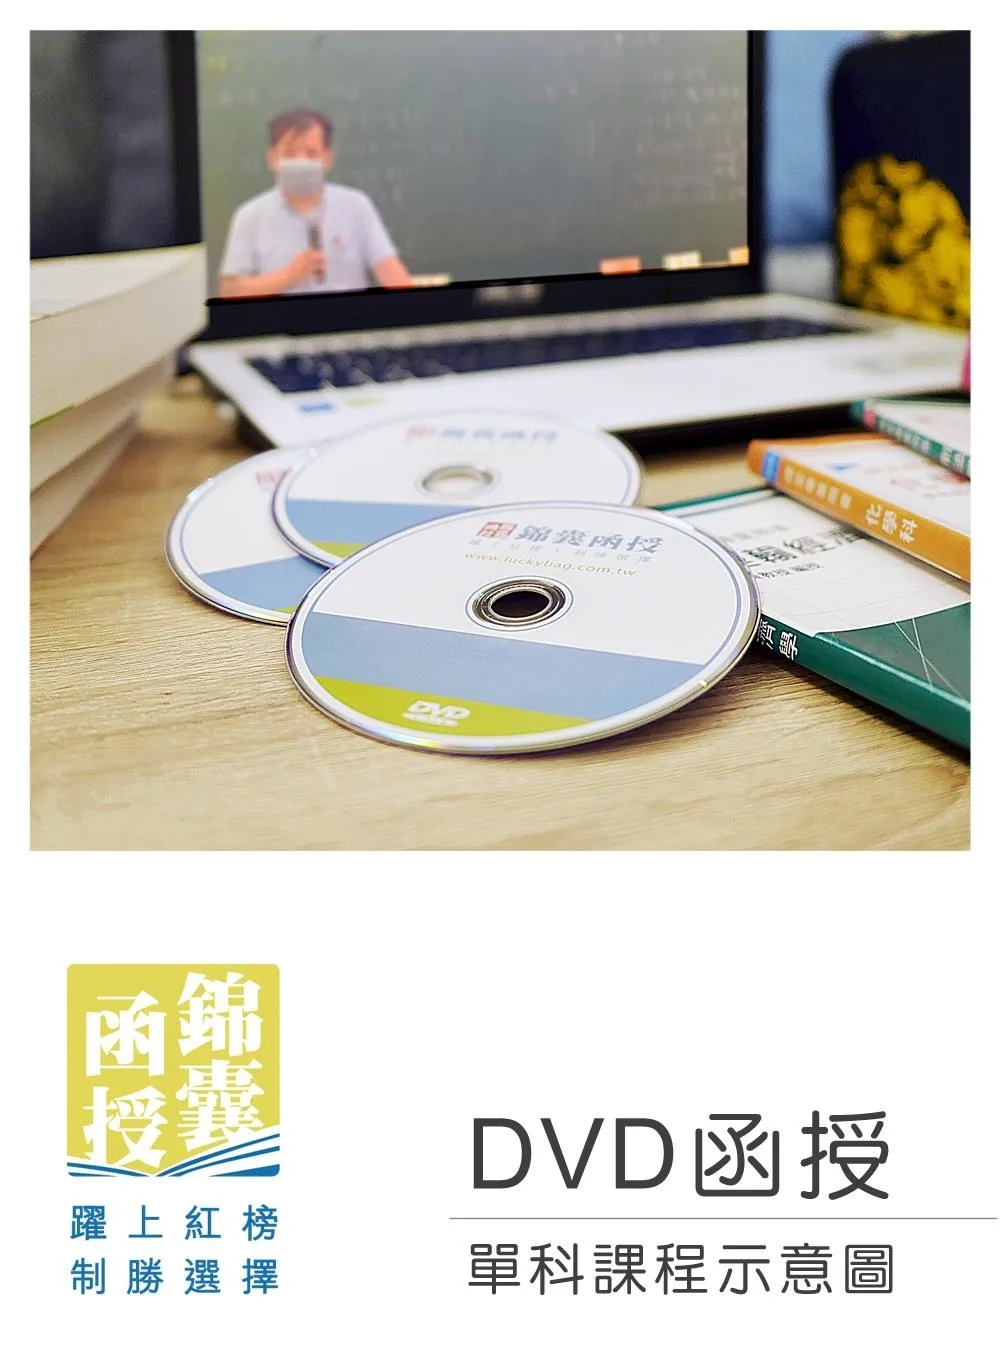 【DVD函授】計算機概要-單科課程(111版)